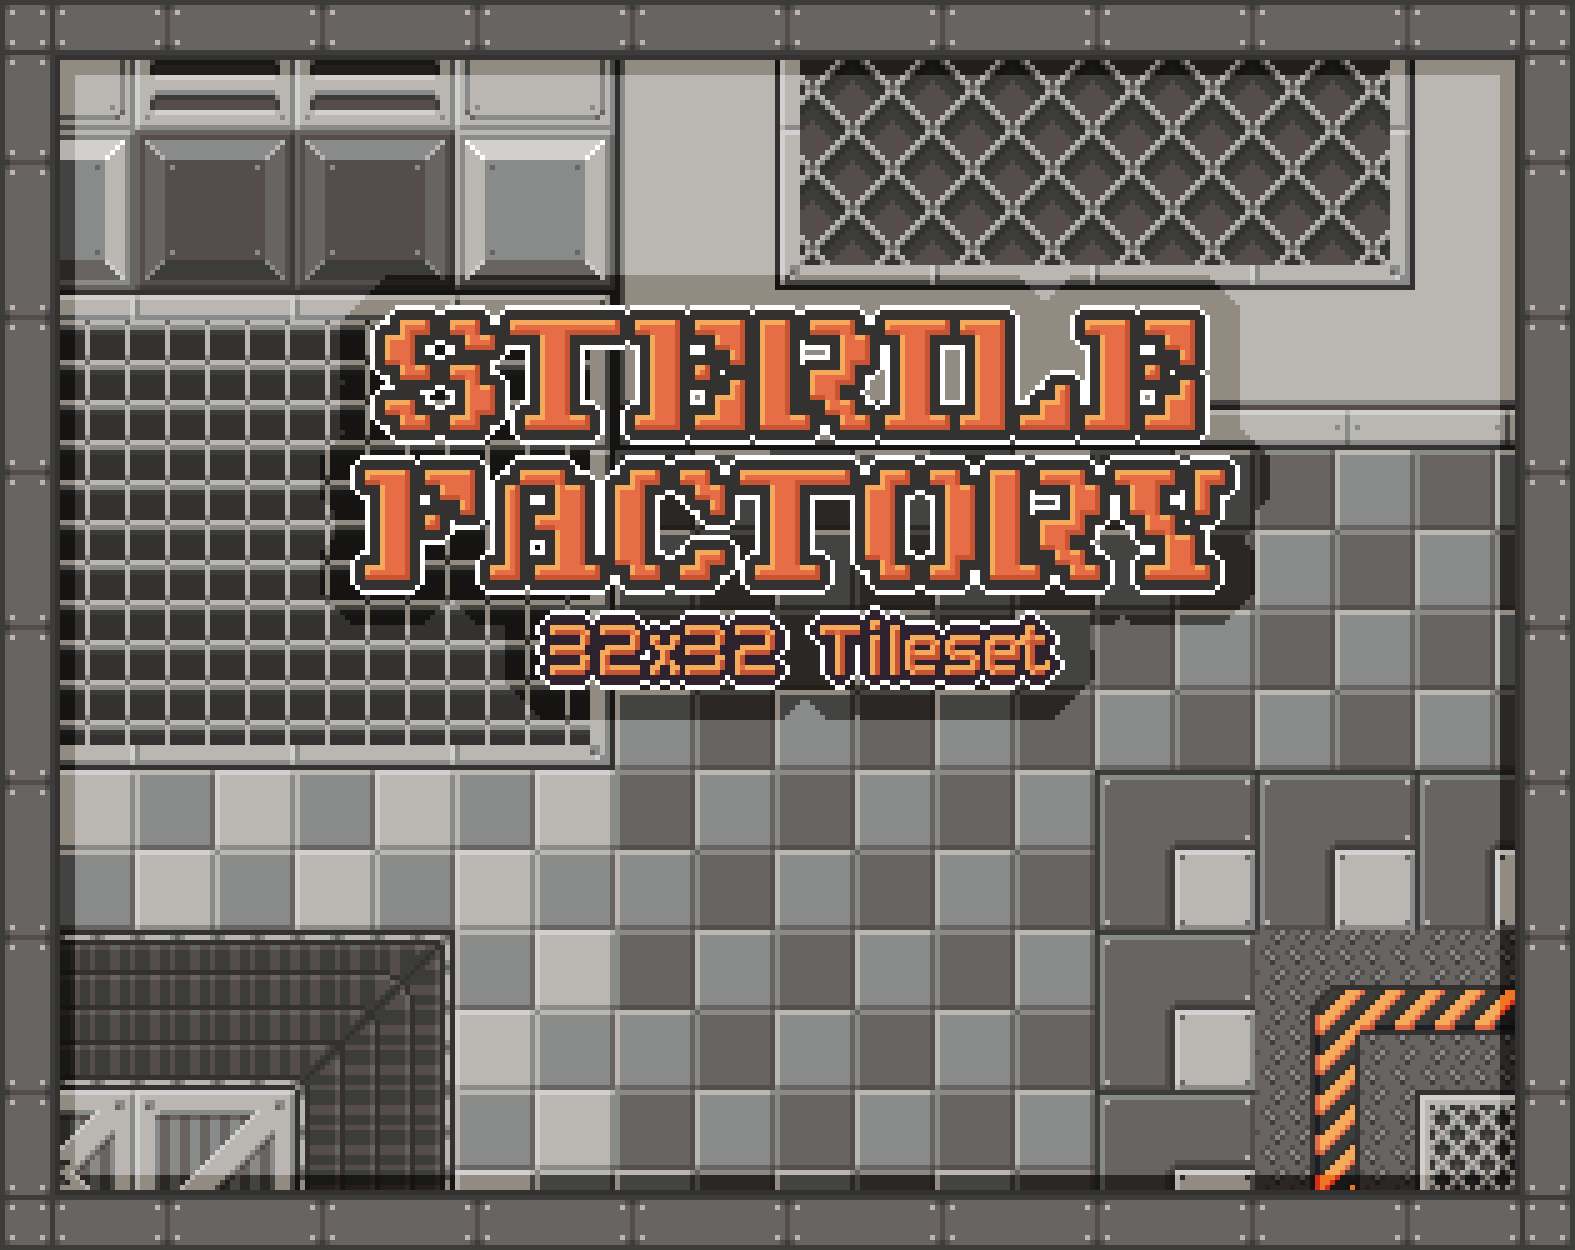 Sterile Factory - Tileset [32x32]